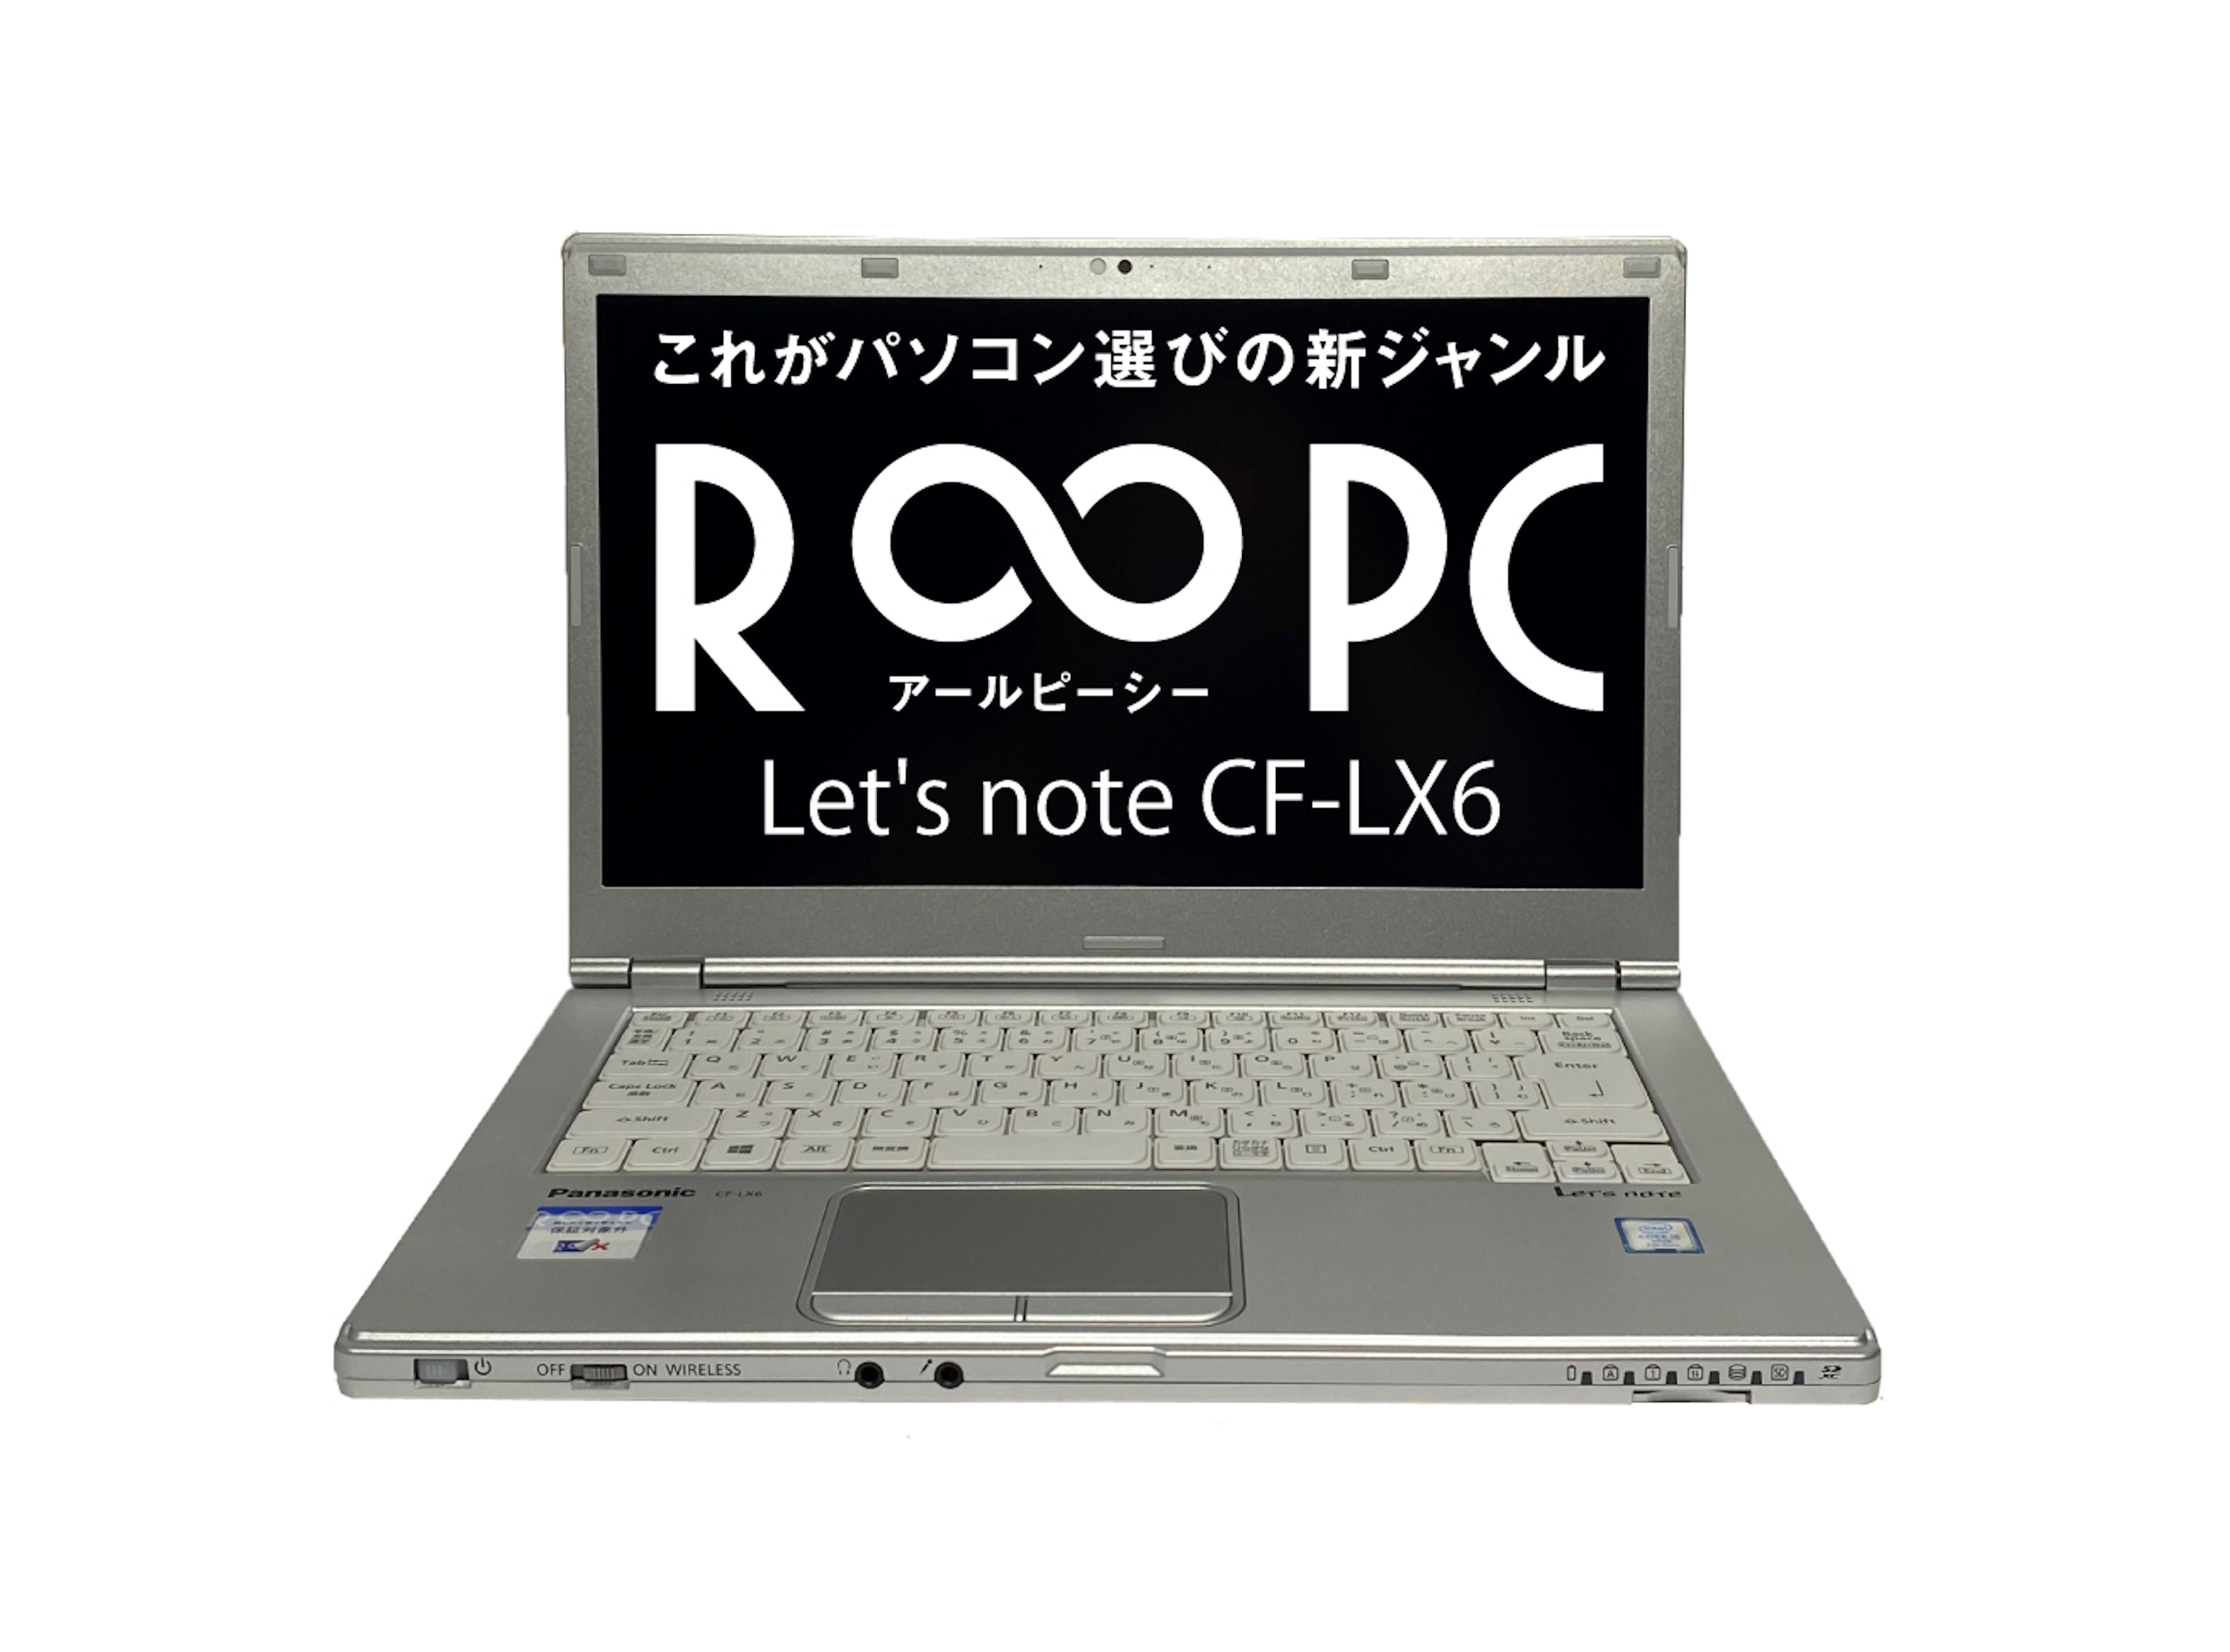 中古・無期限保証・R∞PC】レッツノート LX6 (Let's note CF-LX6